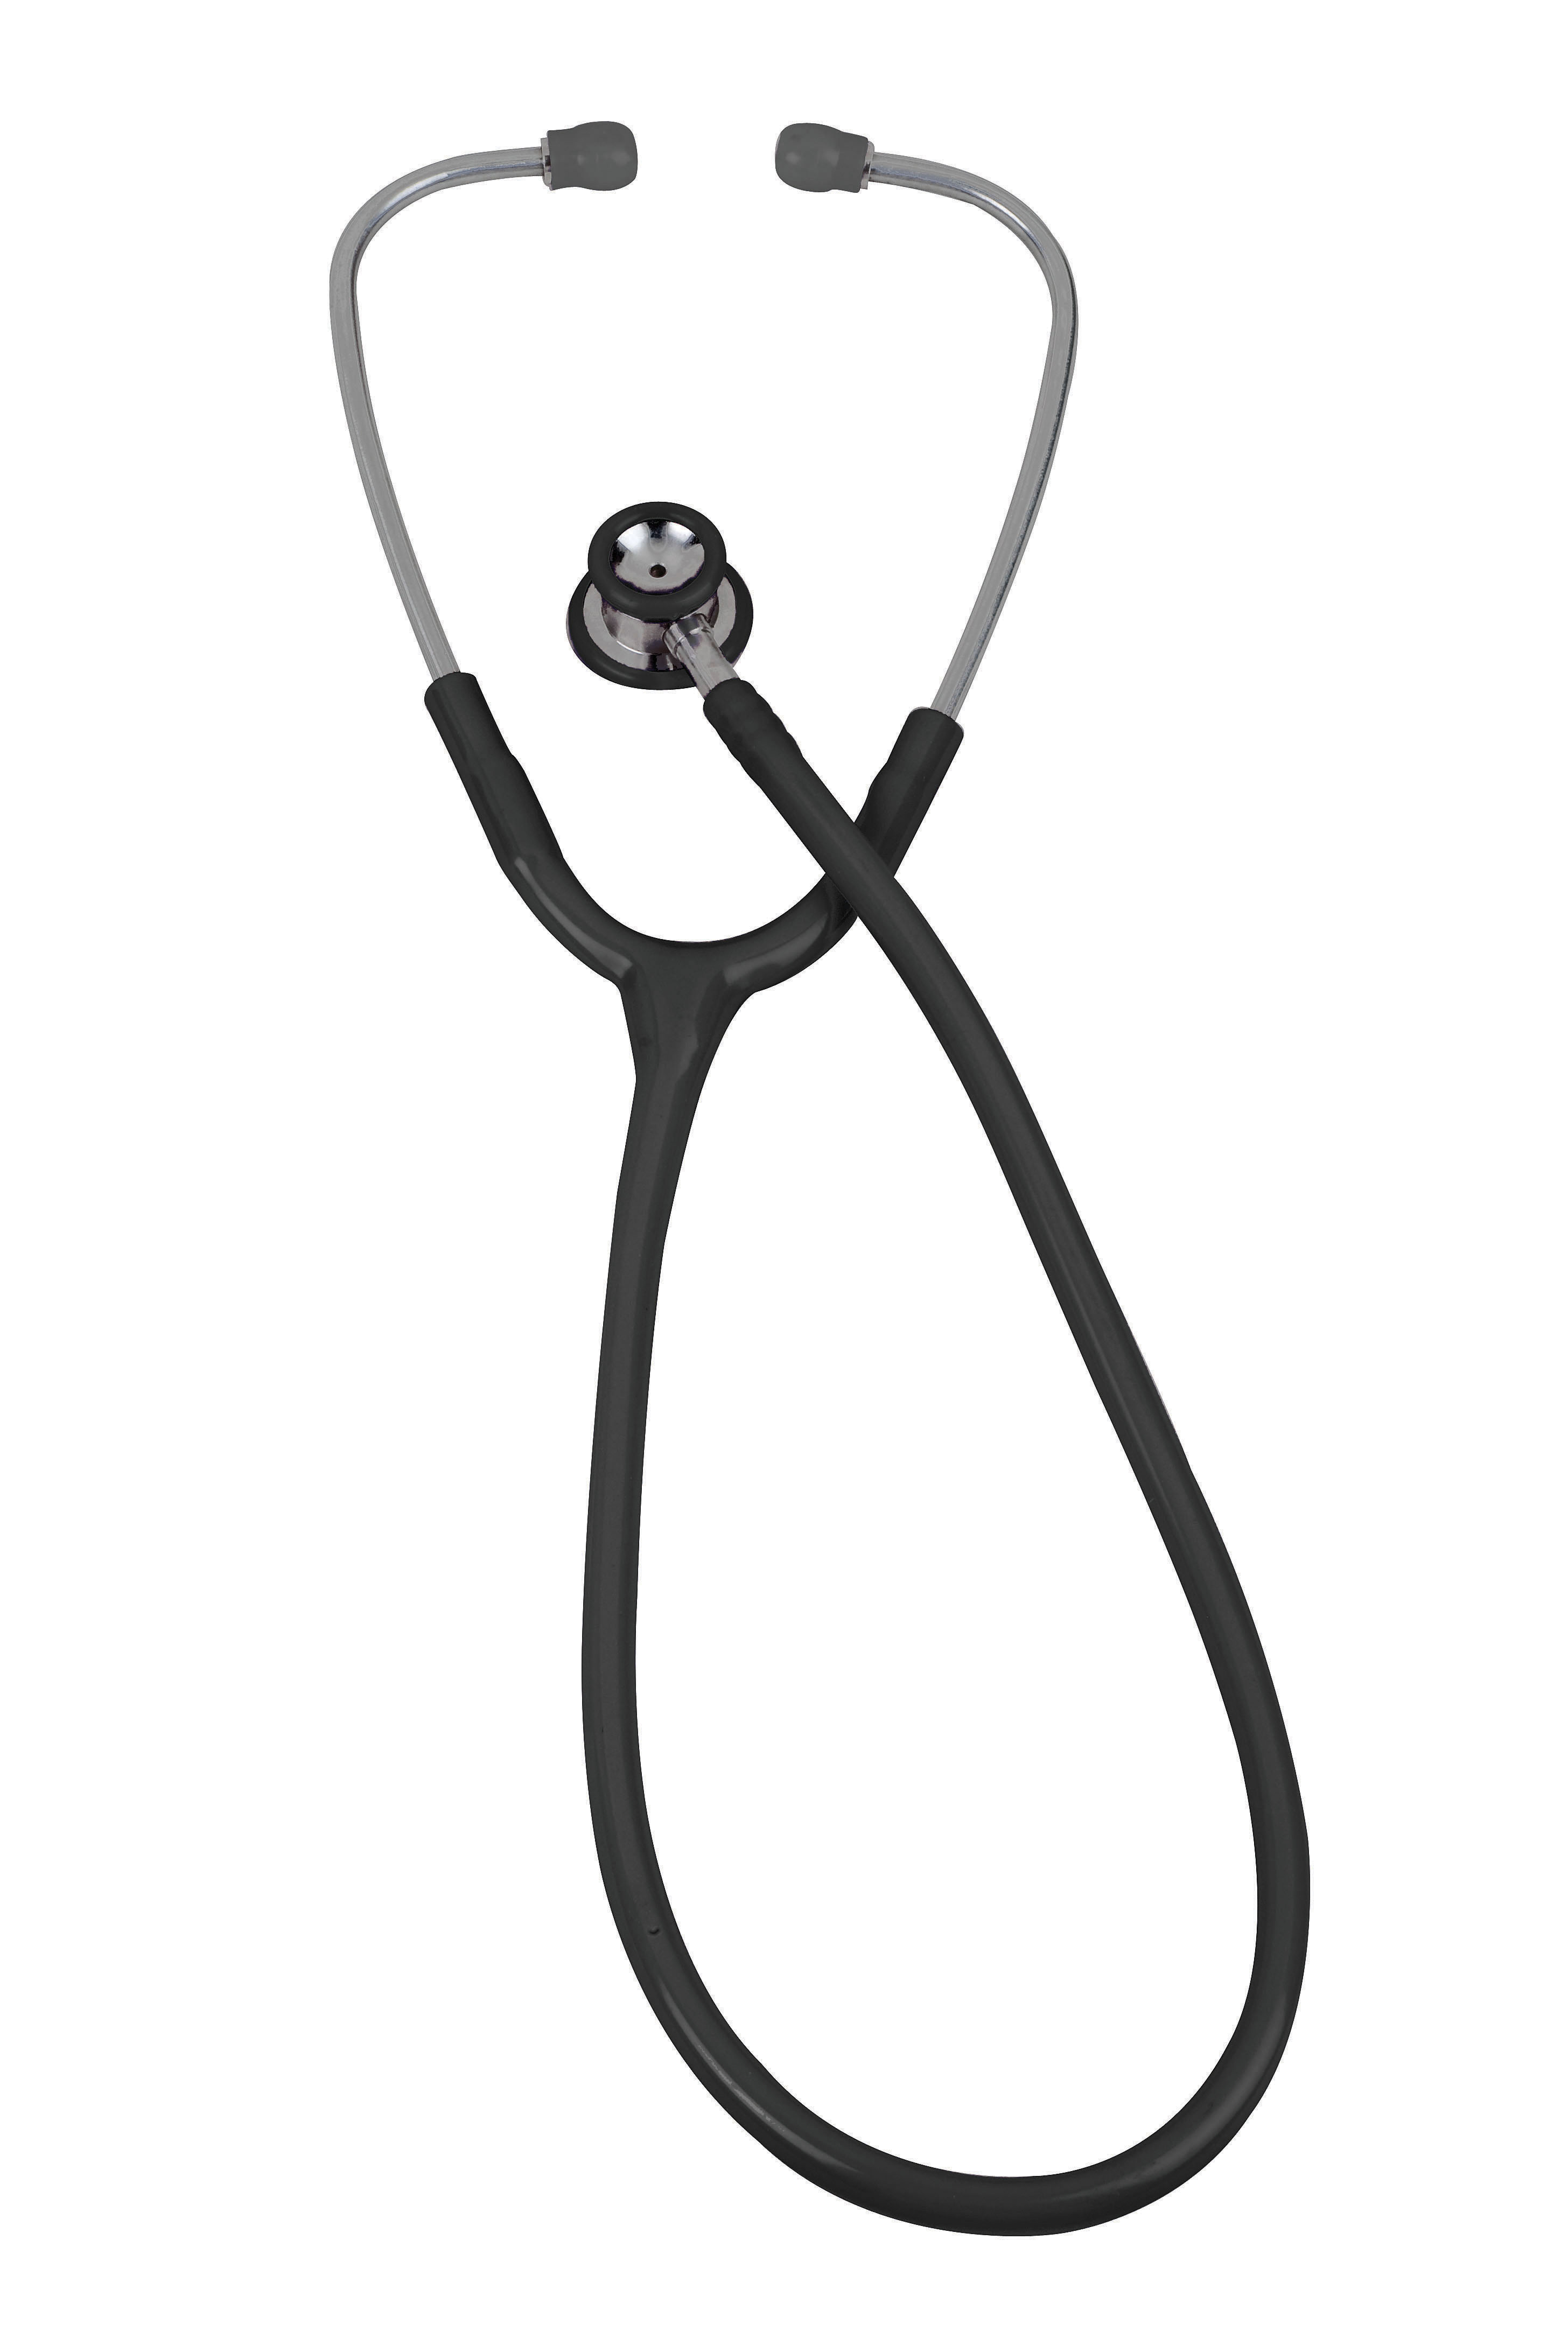 pinnacle-series-stainless-steel-infant-stethoscope-black-05-10701-veridian-3.jpg